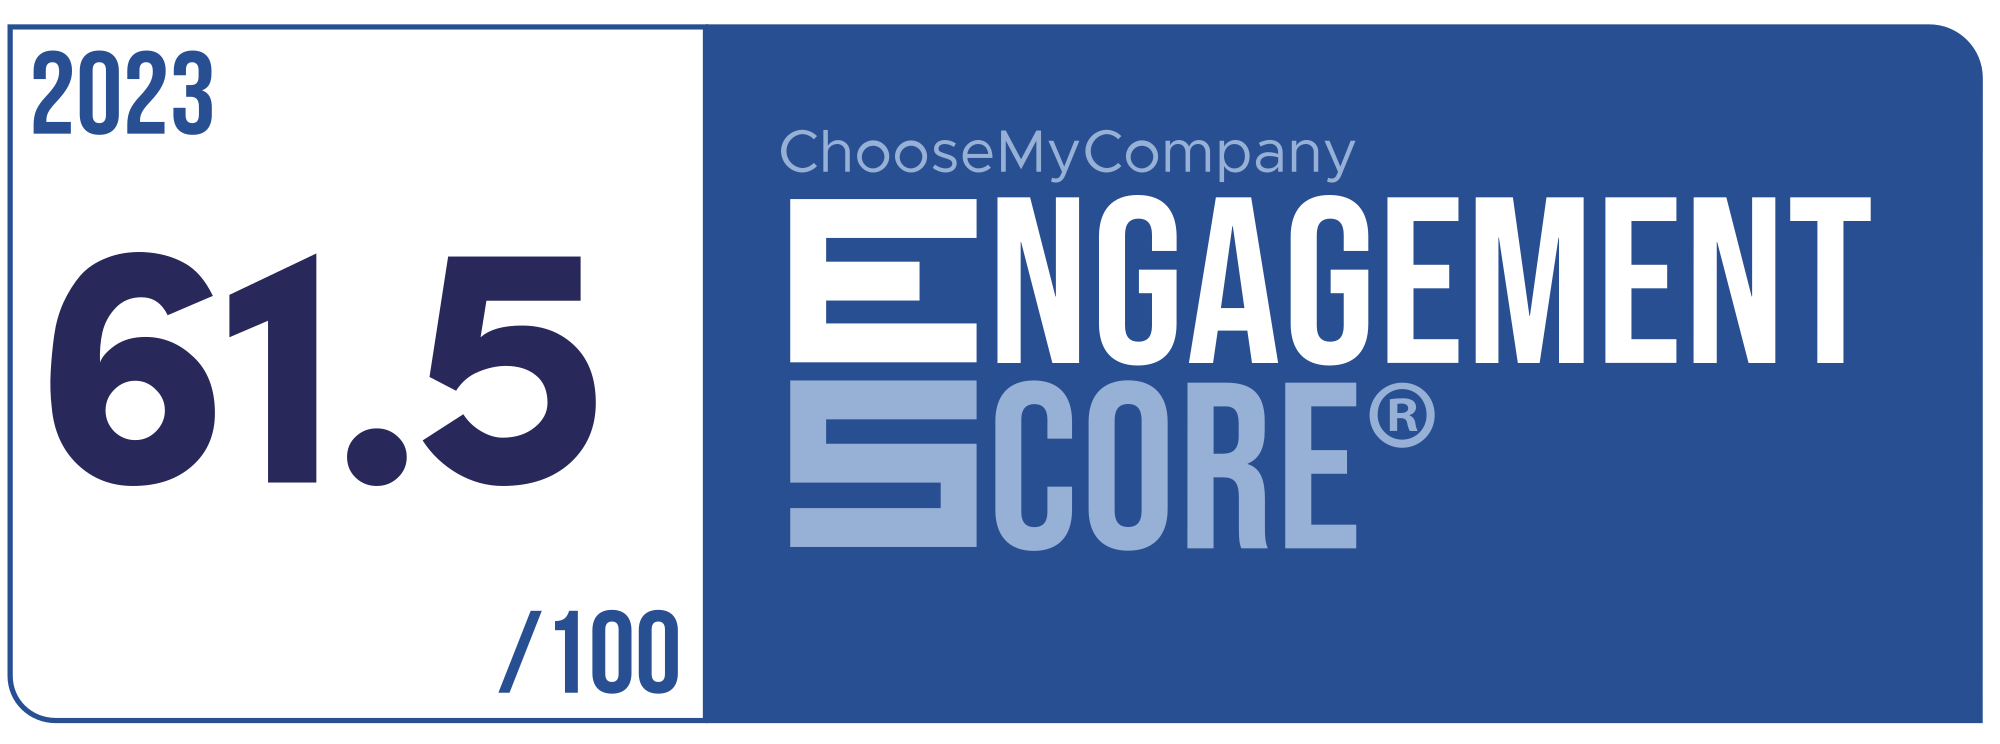 Label Engagement Score 2023 